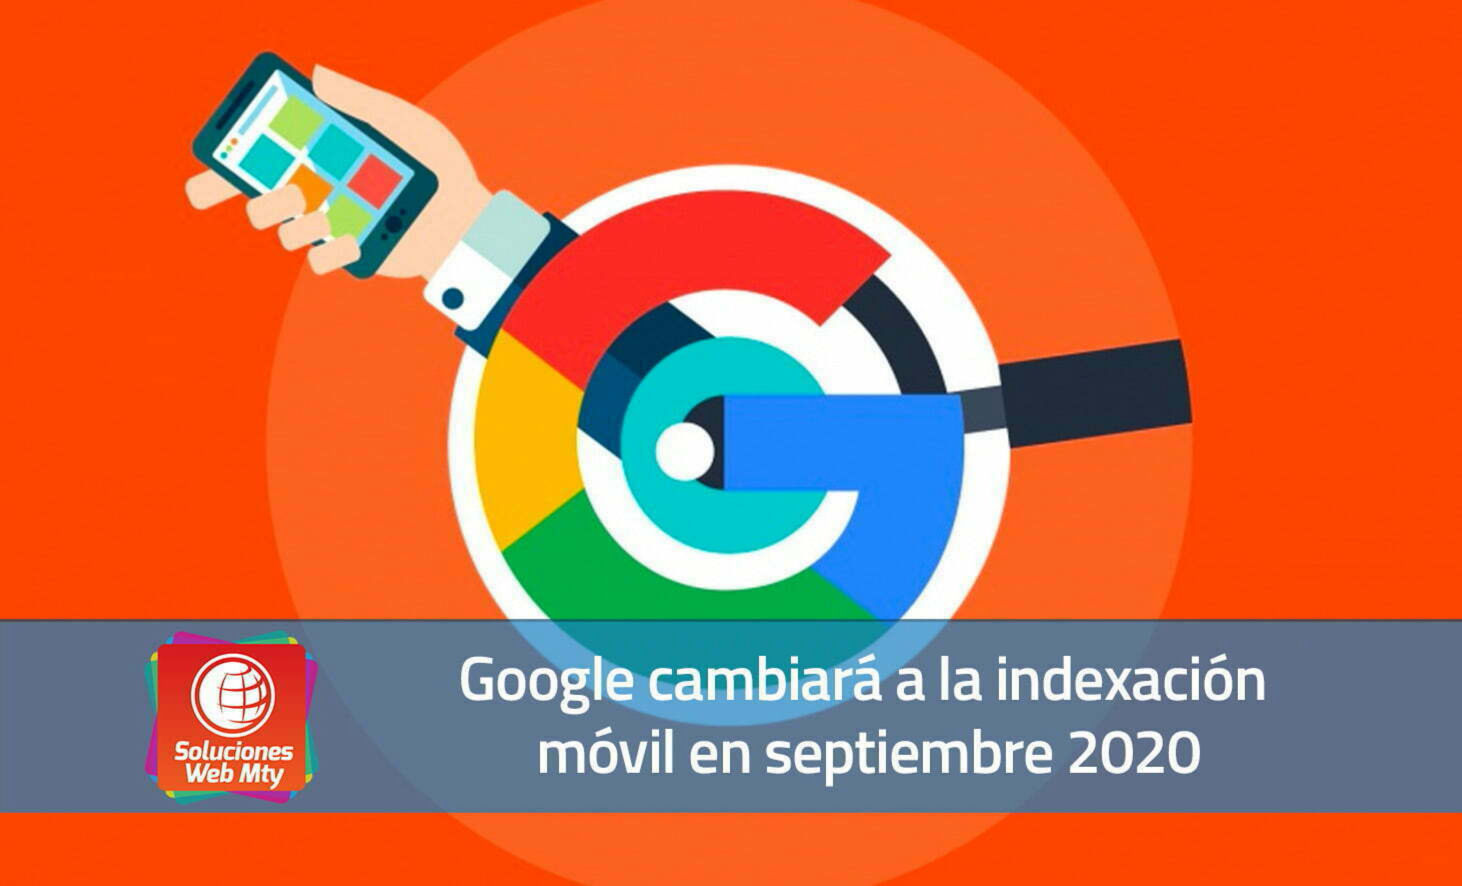 Google cambiará a la indexación móvil en septiembre 2020